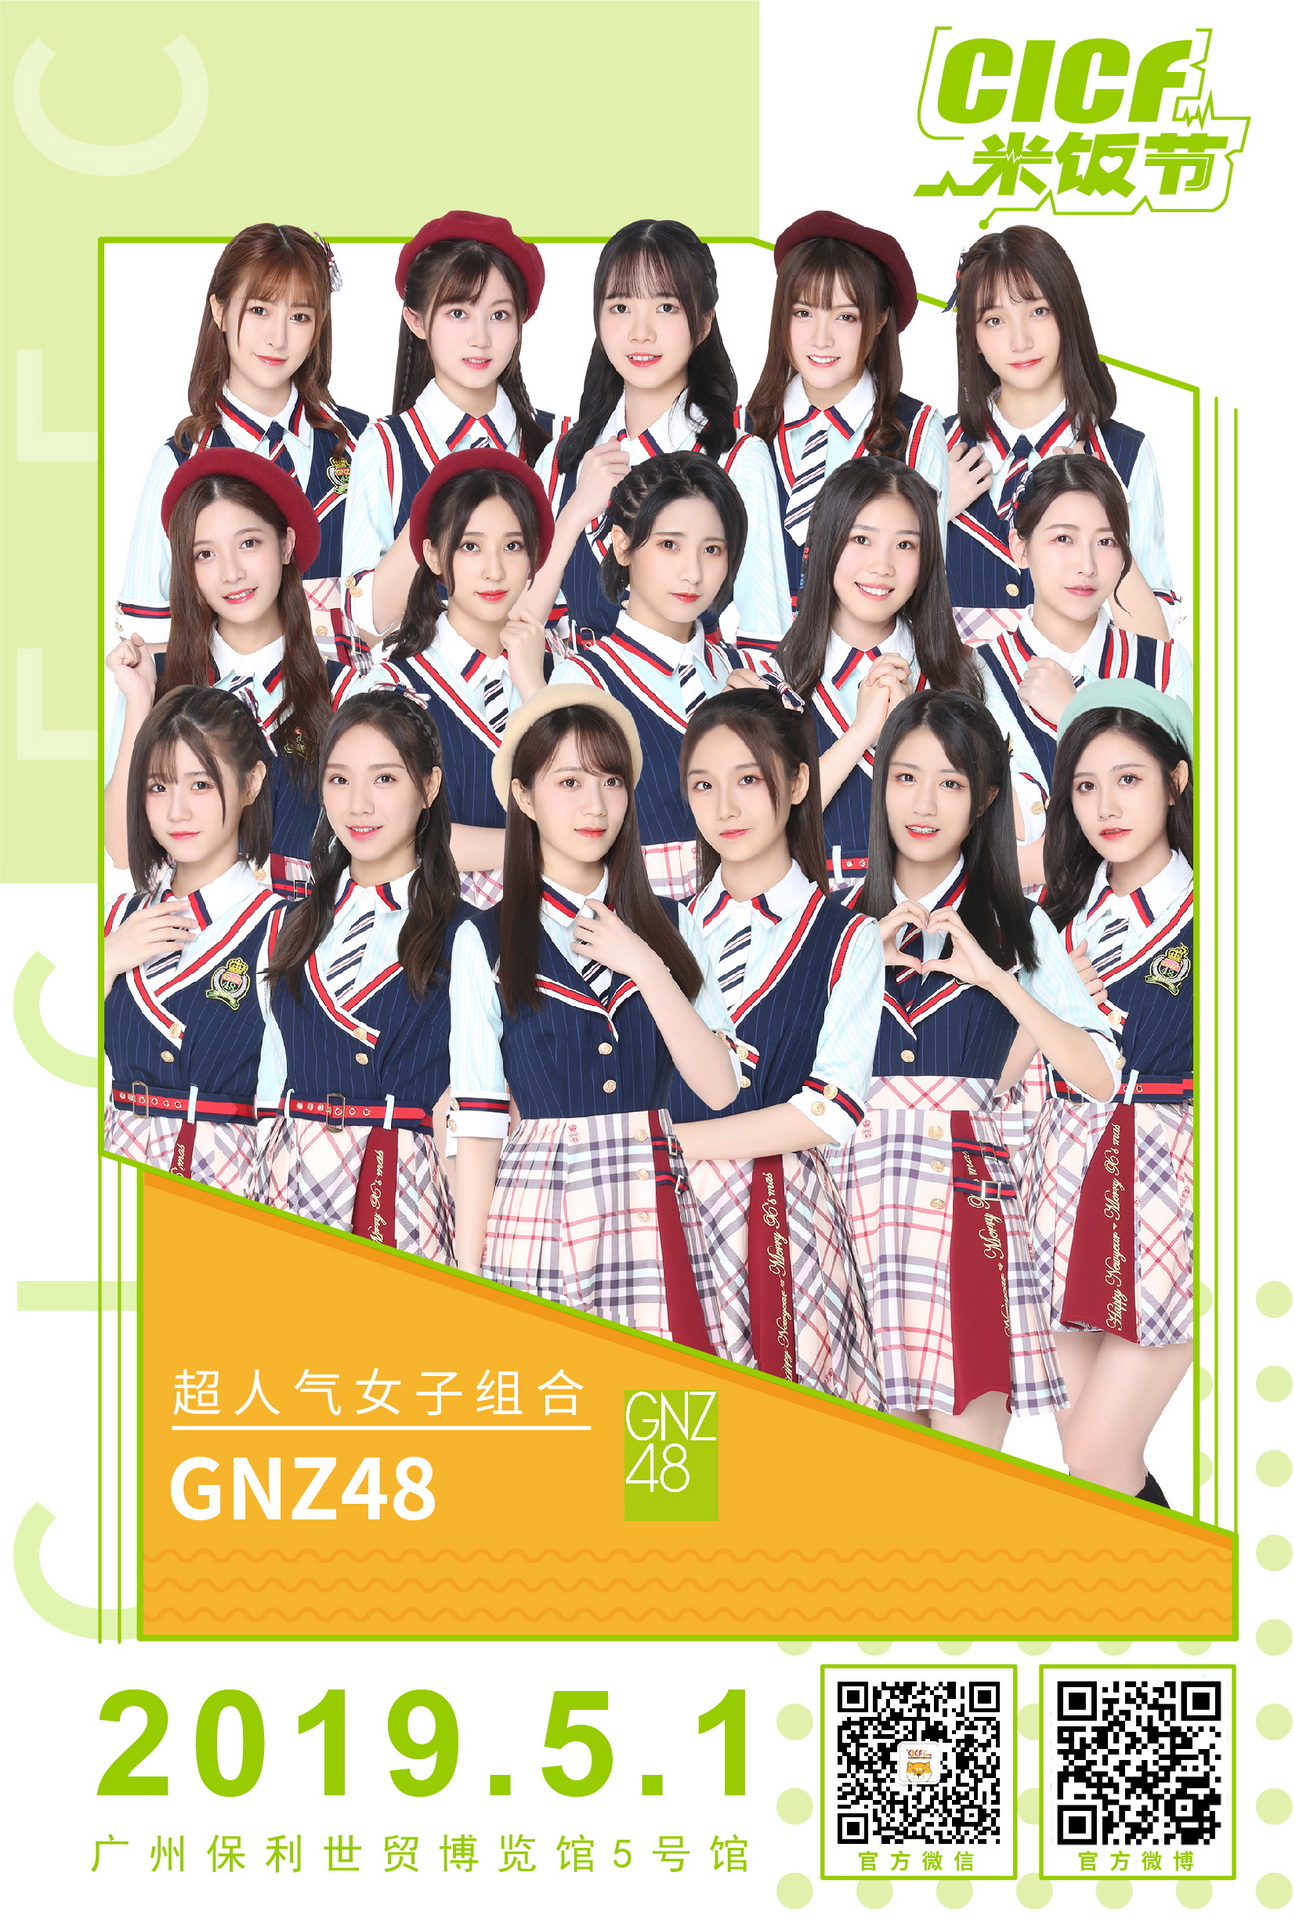 gnz48所有成员图片